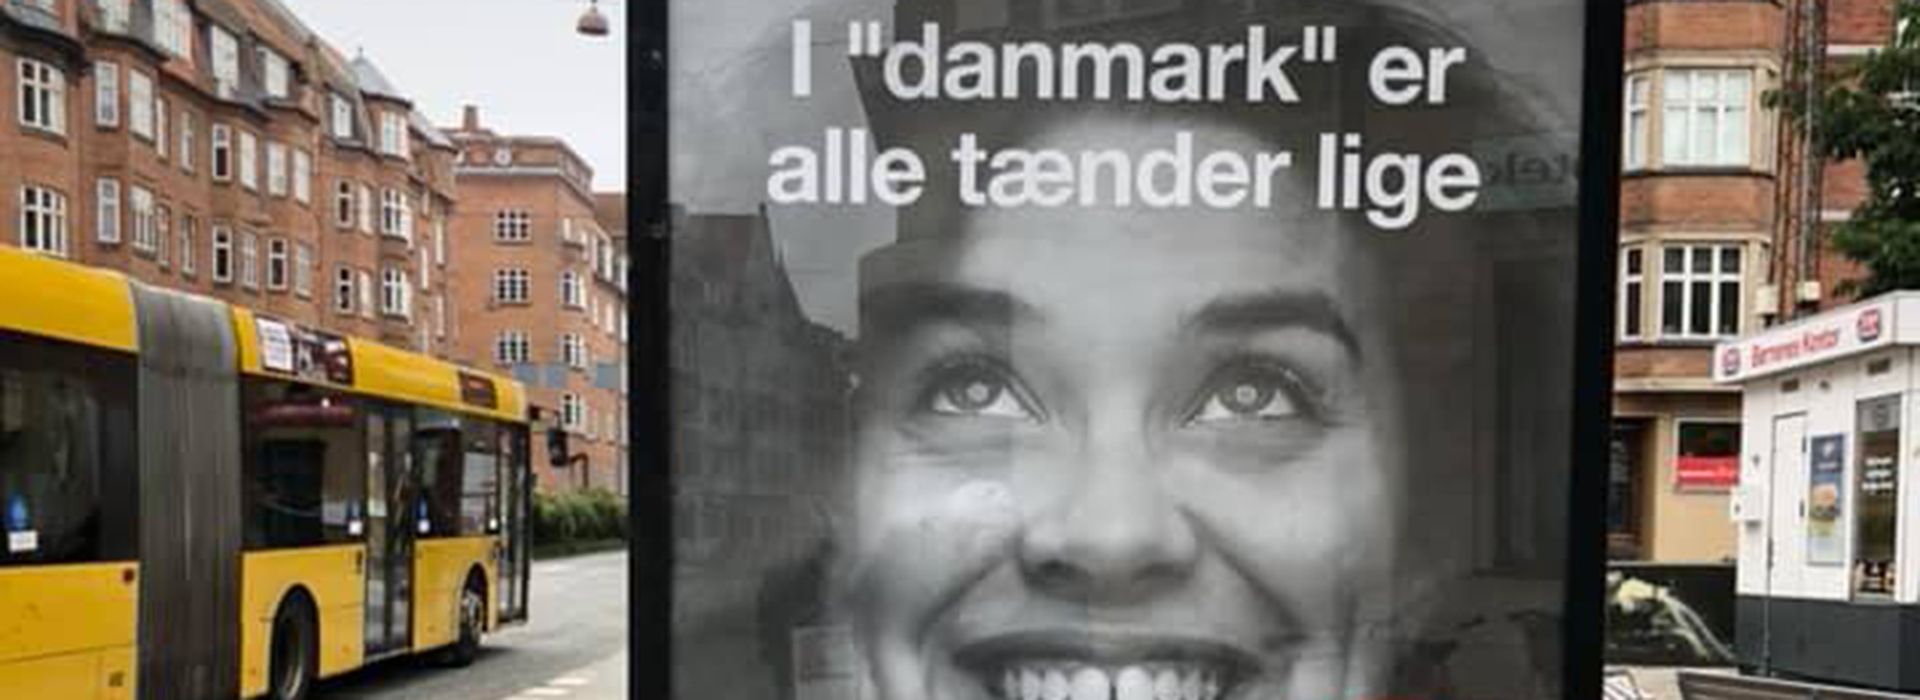 I Danmark er alle tænder lige